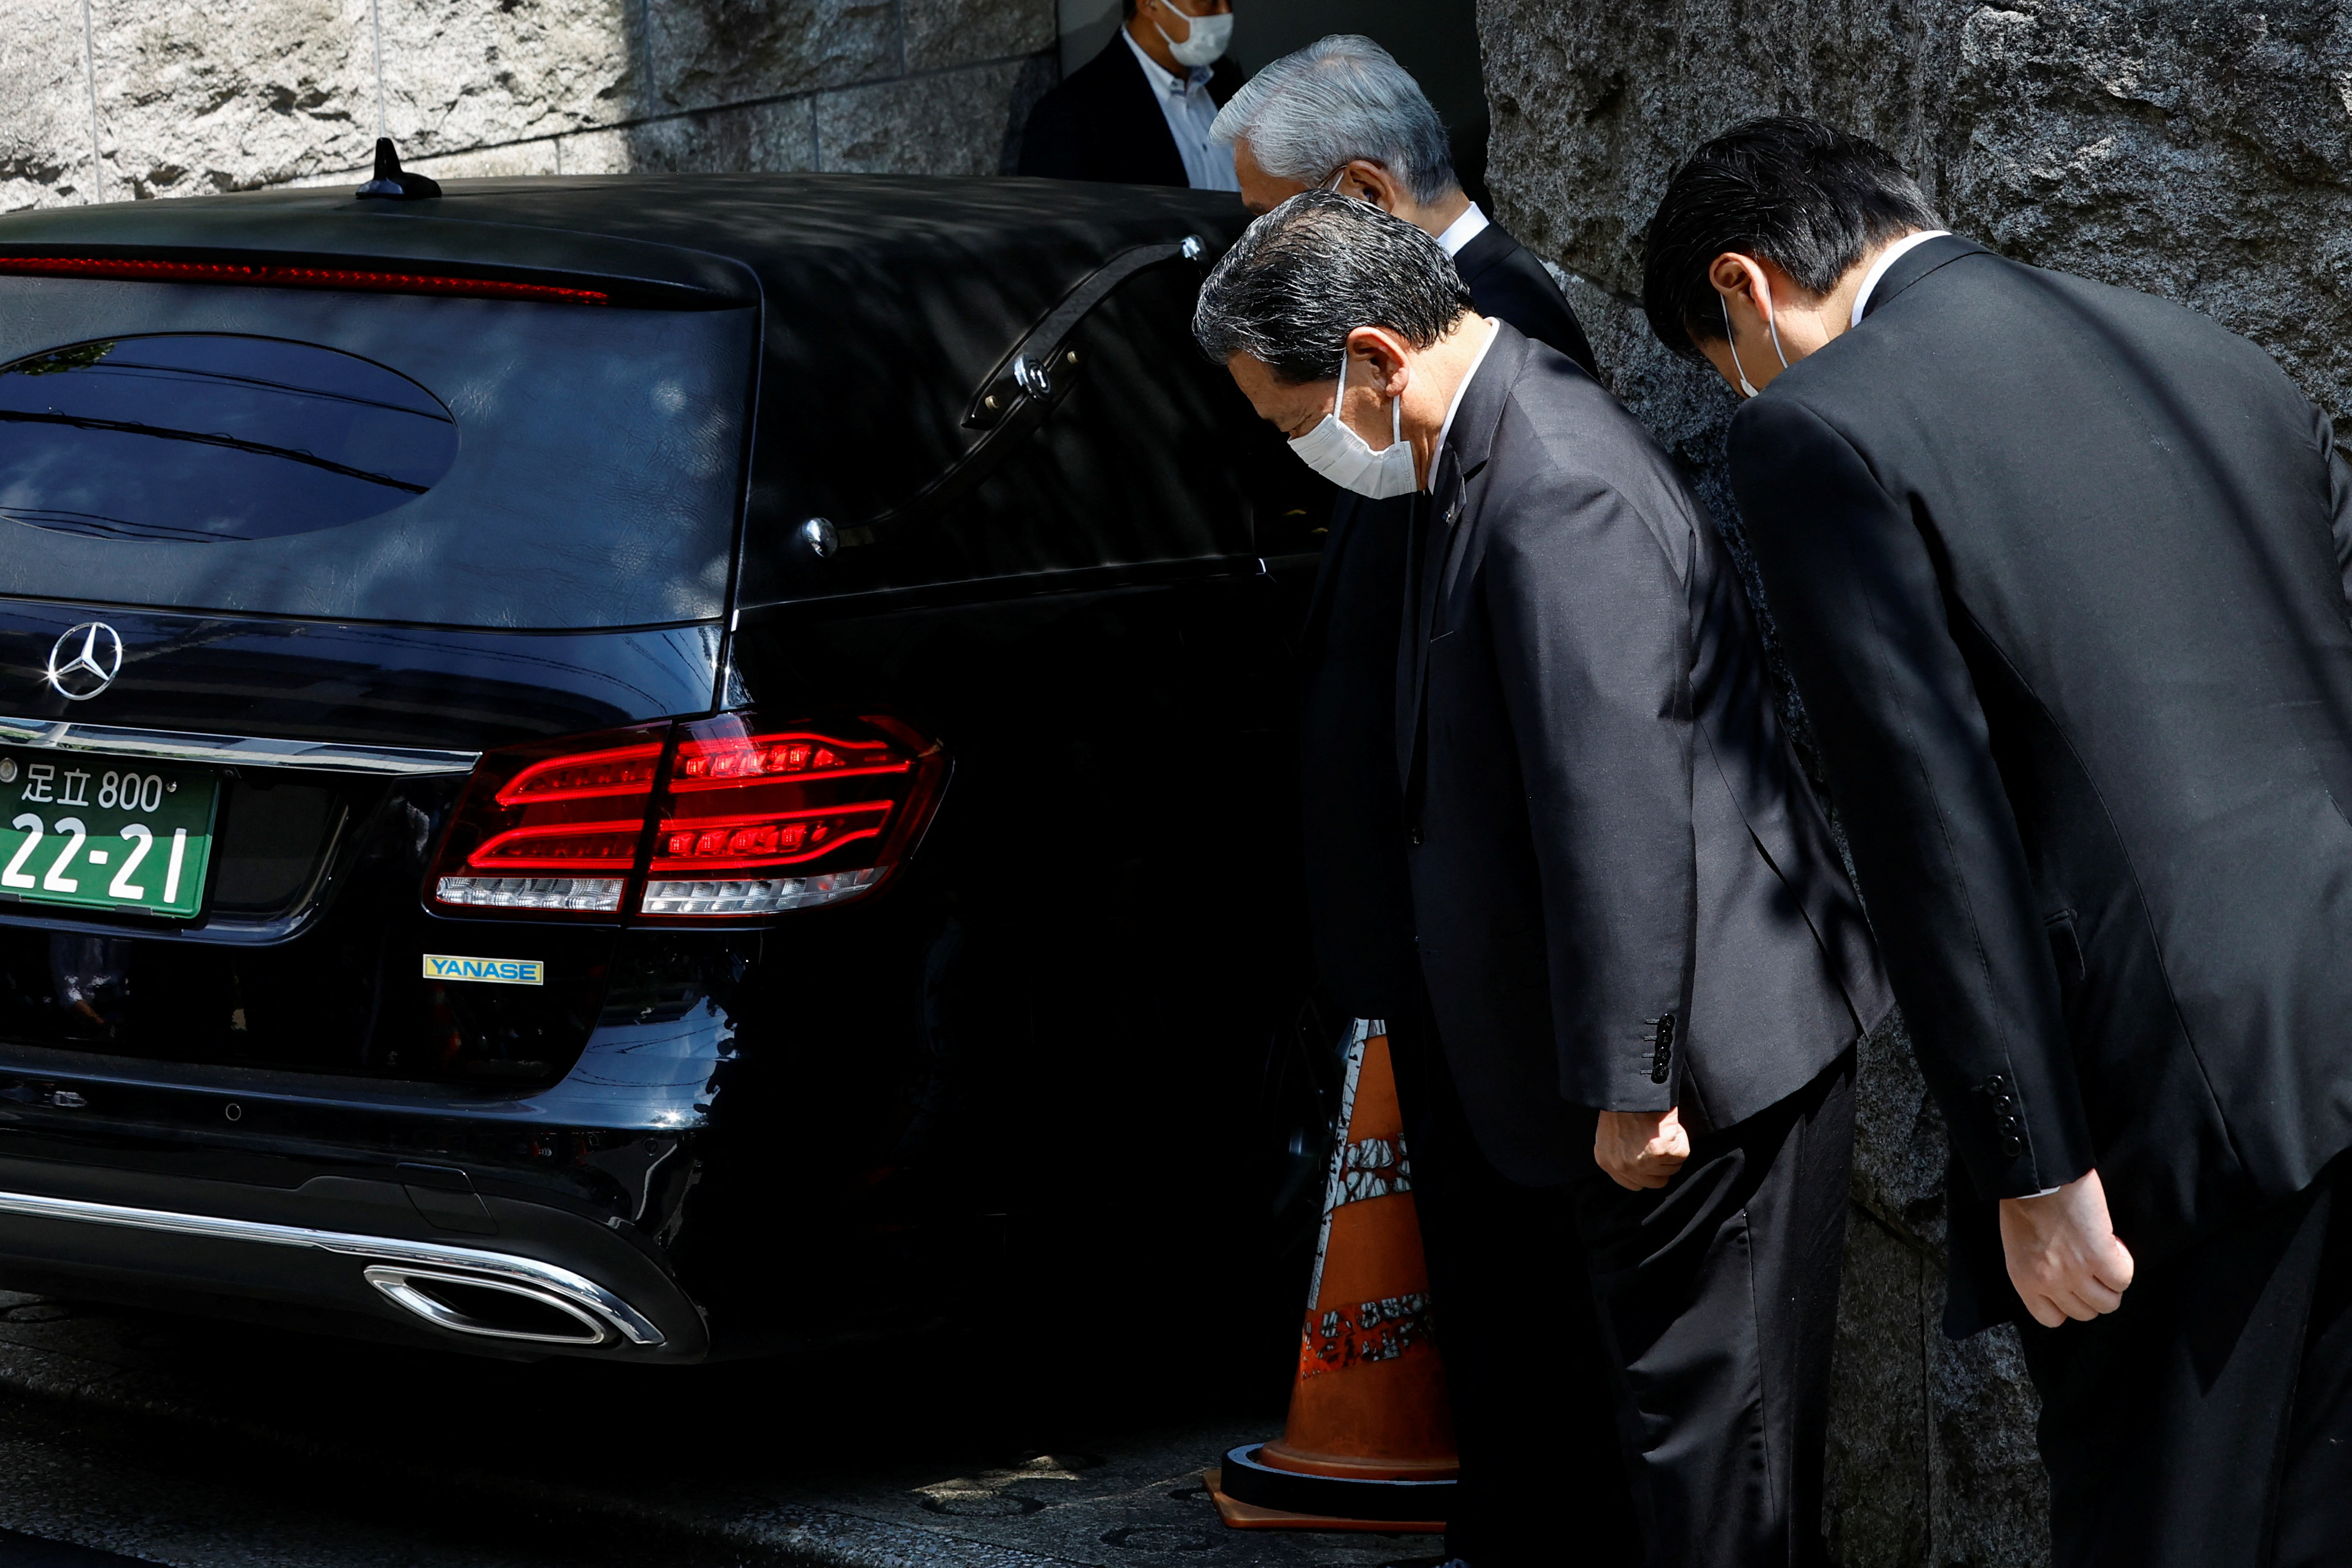 El cuerpo de Shinzo Abe fue trasladado a Tokio y comenzaron los preparativos para su funeral